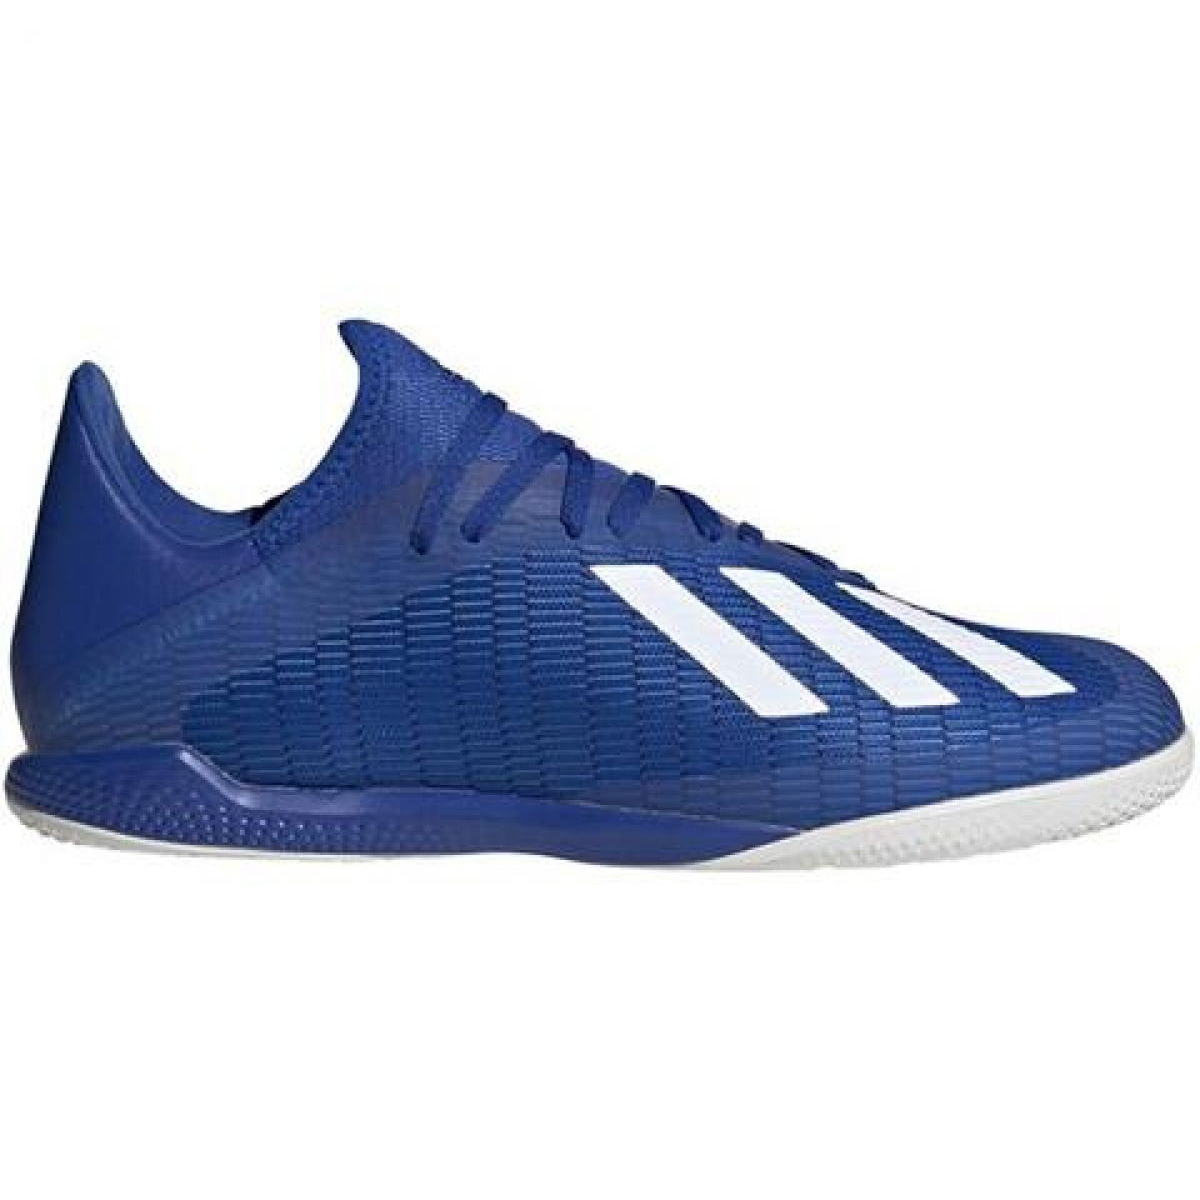 Buty piłkarskie adidas X 19.3 In M EG7154 niebieskie niebieskie